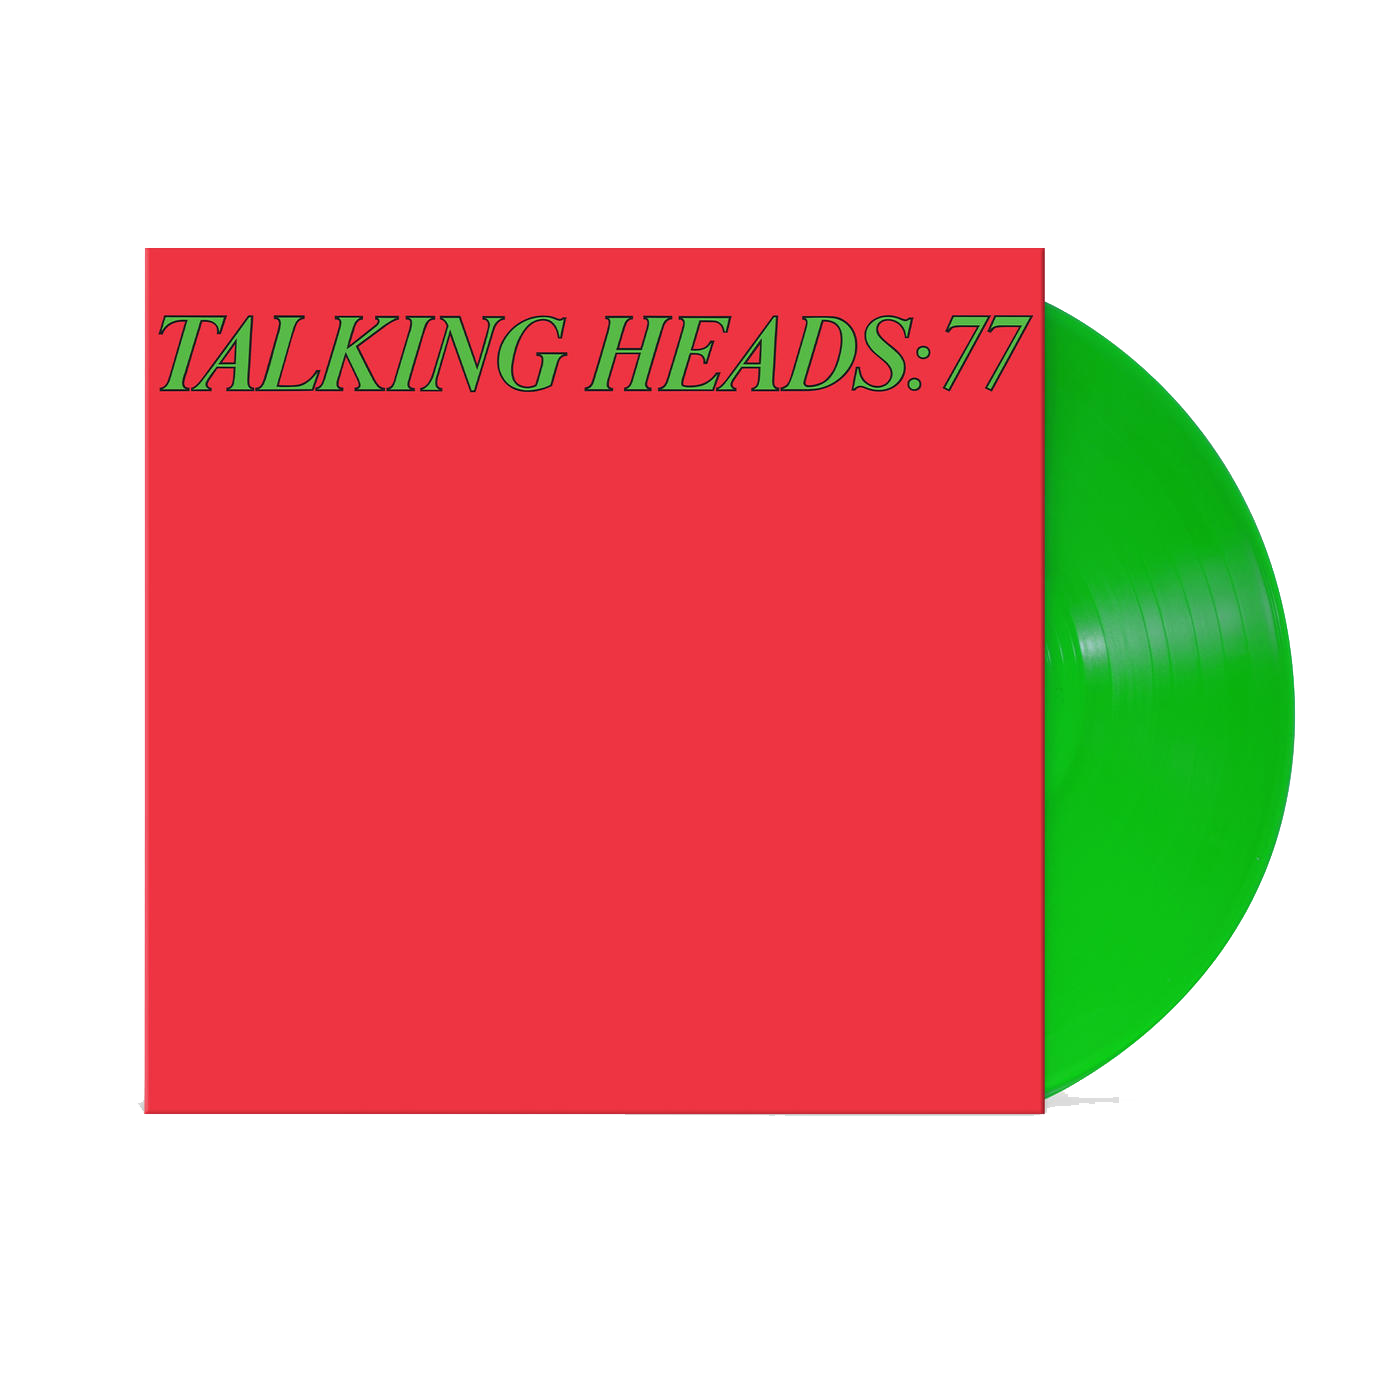 Talking Heads - Talking Heads: 77 (Green Vinyl)